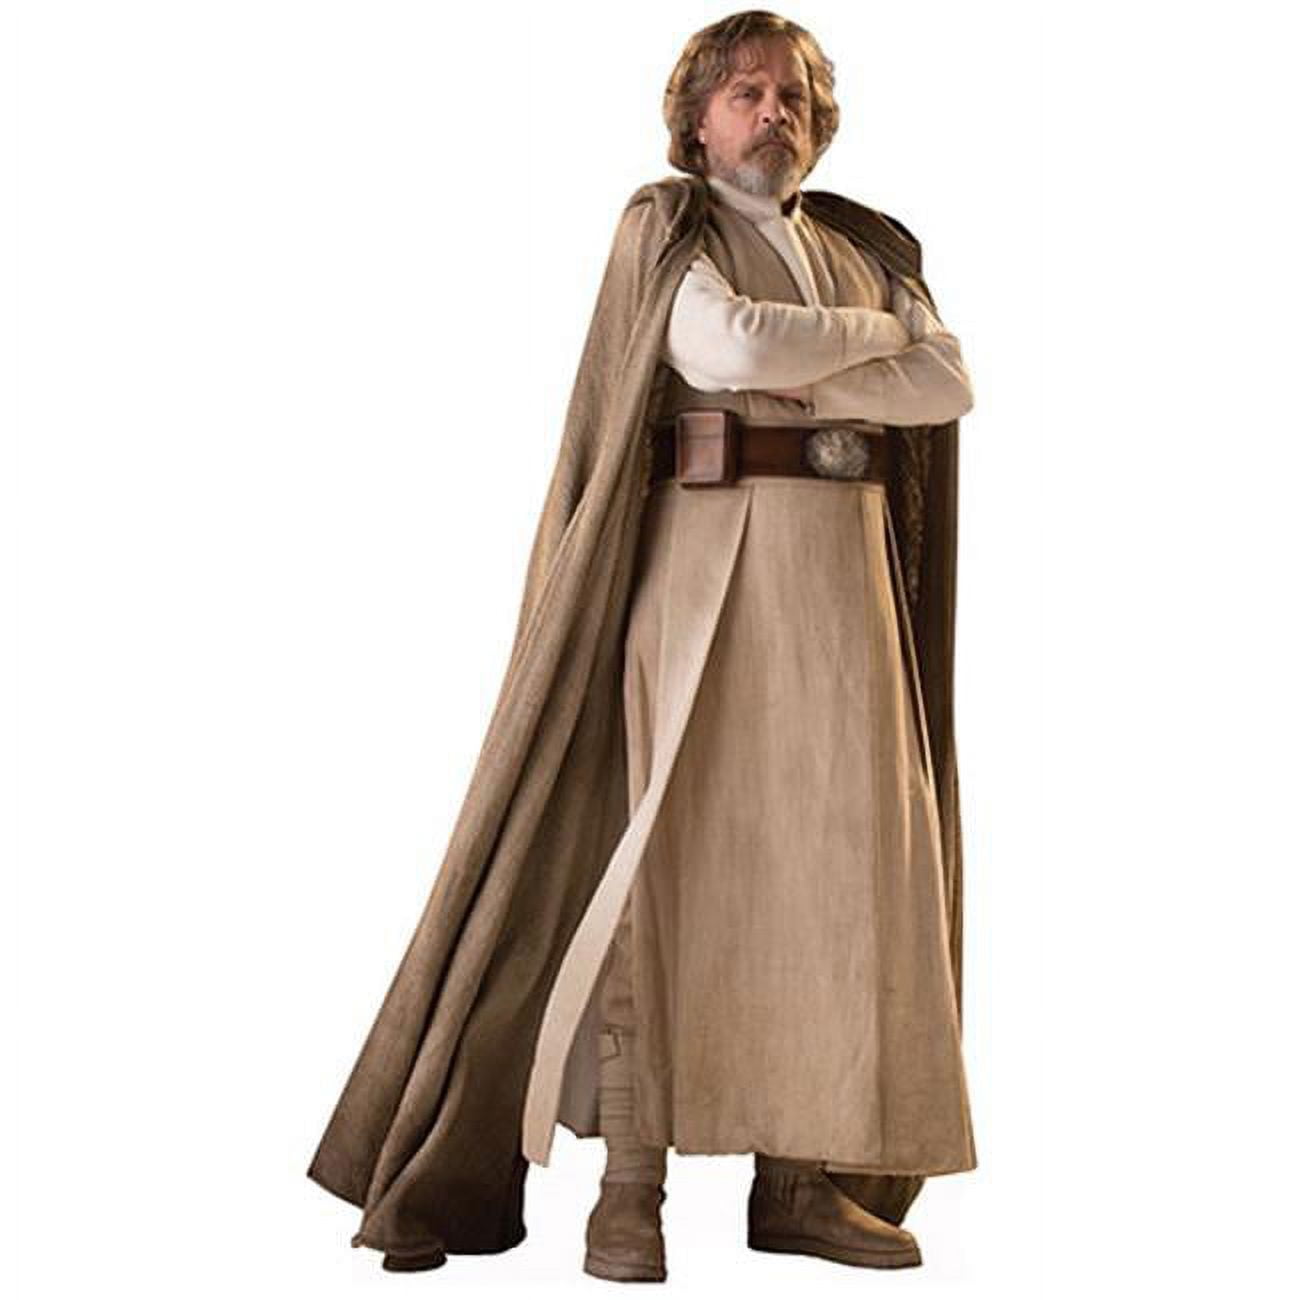 2530 70 X 37 In. Luke Skywalker - Star Wars Viii The Last Jedi